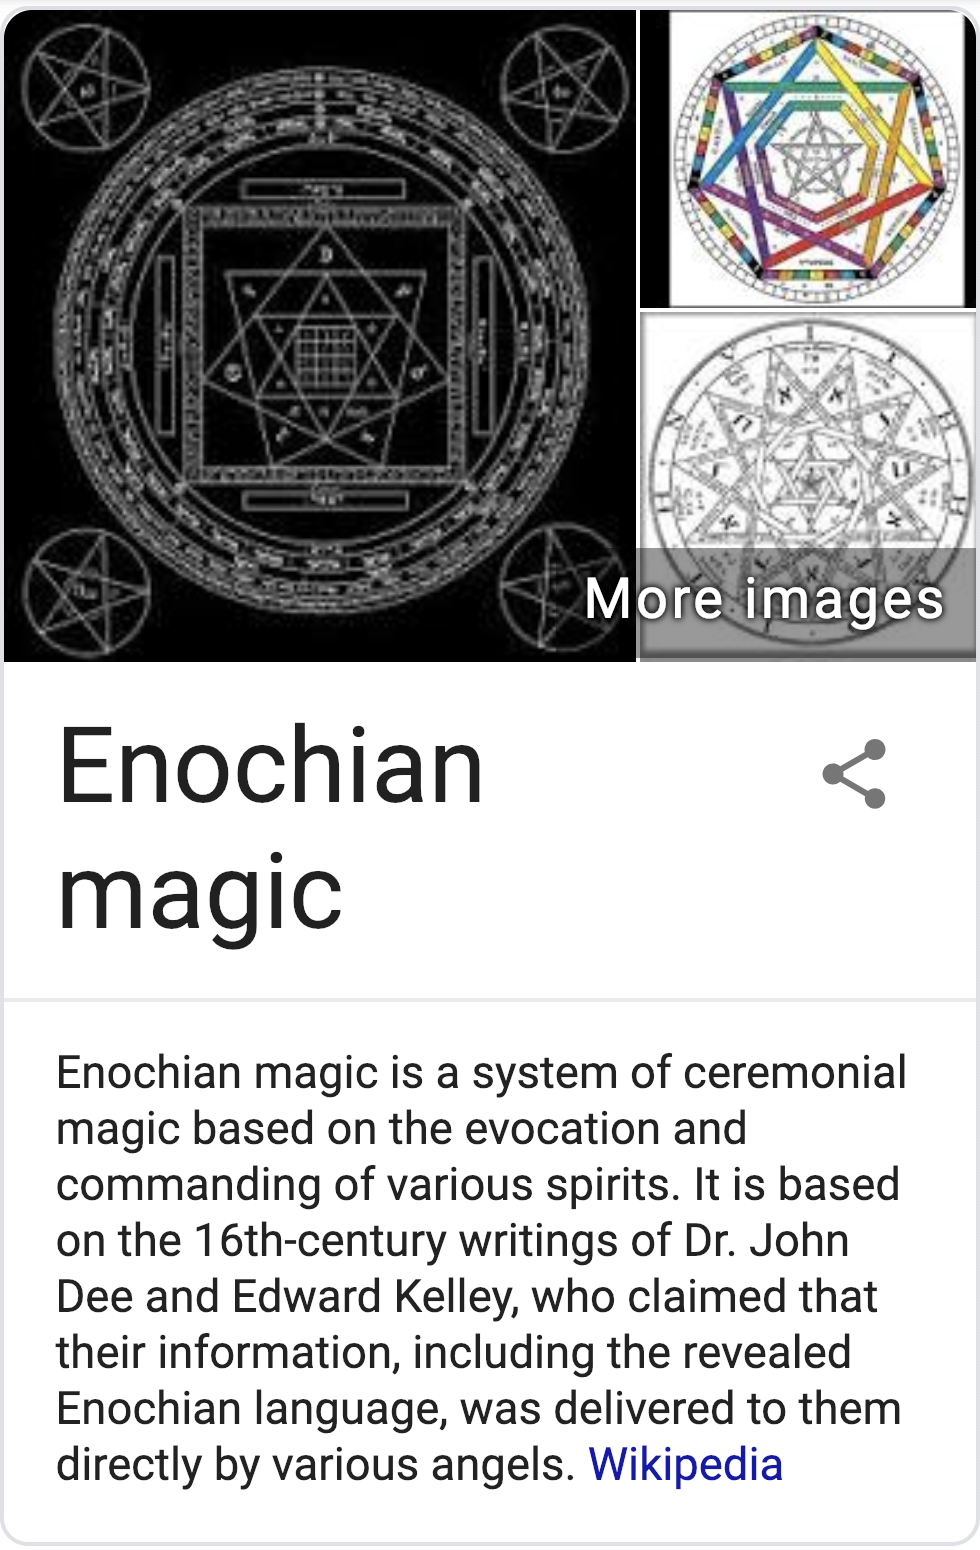 the enochian myth